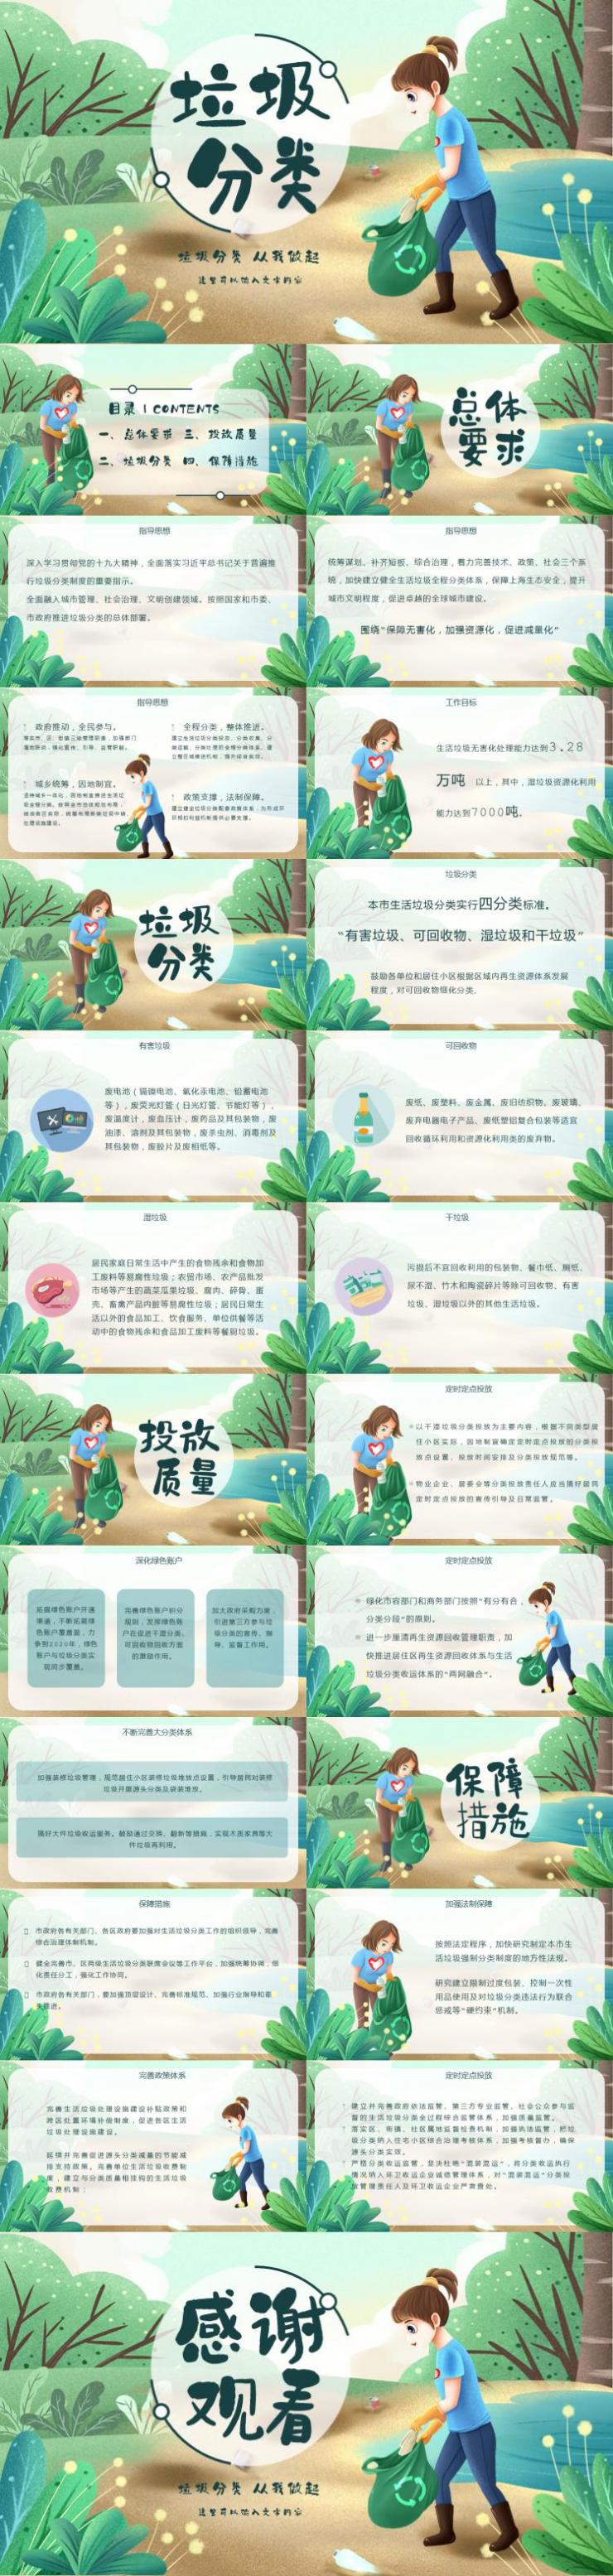 上海垃圾分類人人有責環保插畫教育ppt模板下載